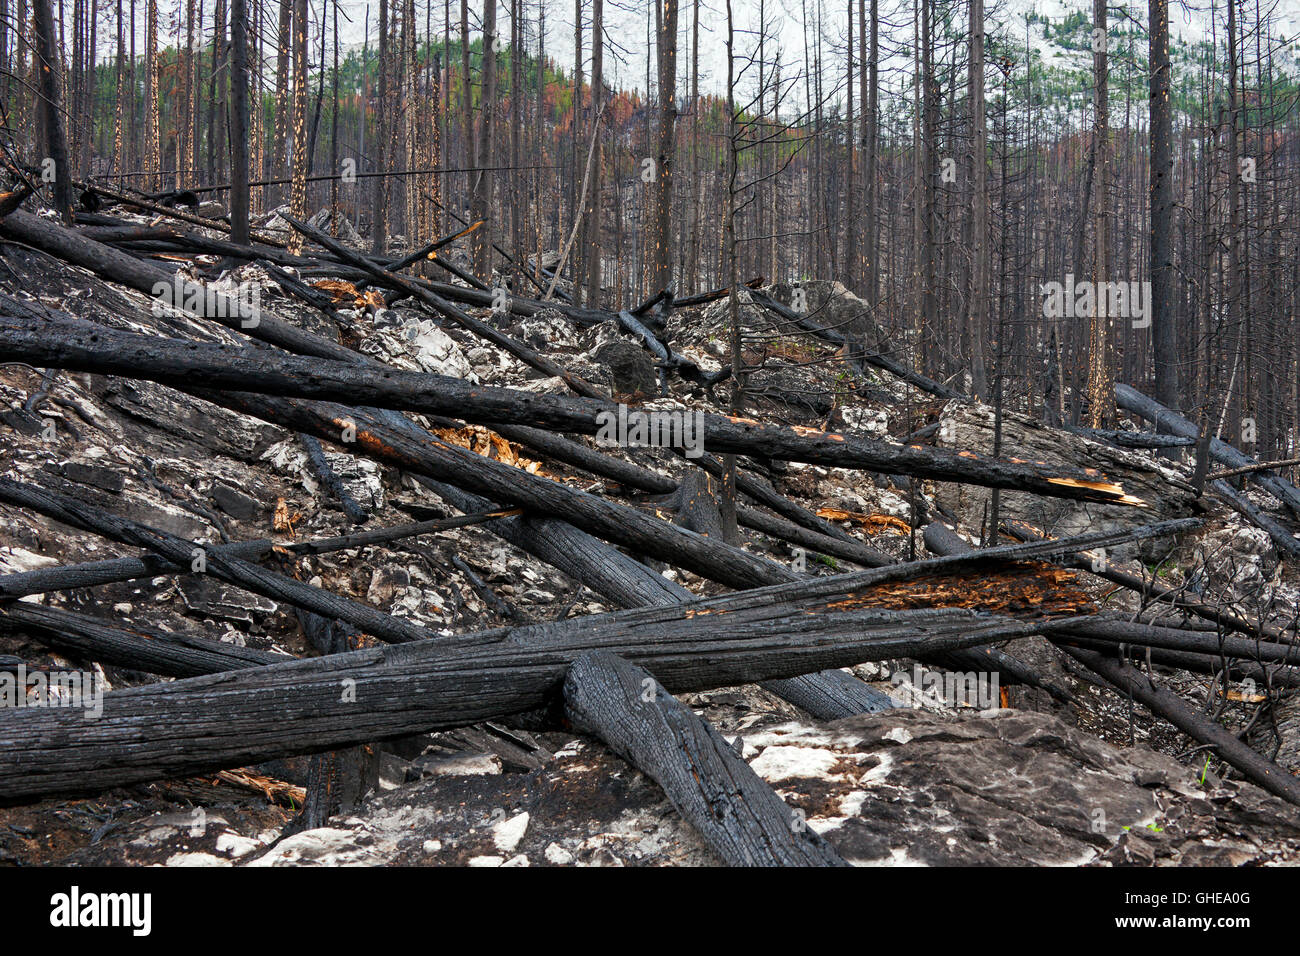 Los troncos de los árboles carbonizados y tierra quemada quemado por incendios forestales, el Parque Nacional de Jasper, Alberta, Canadá Foto de stock